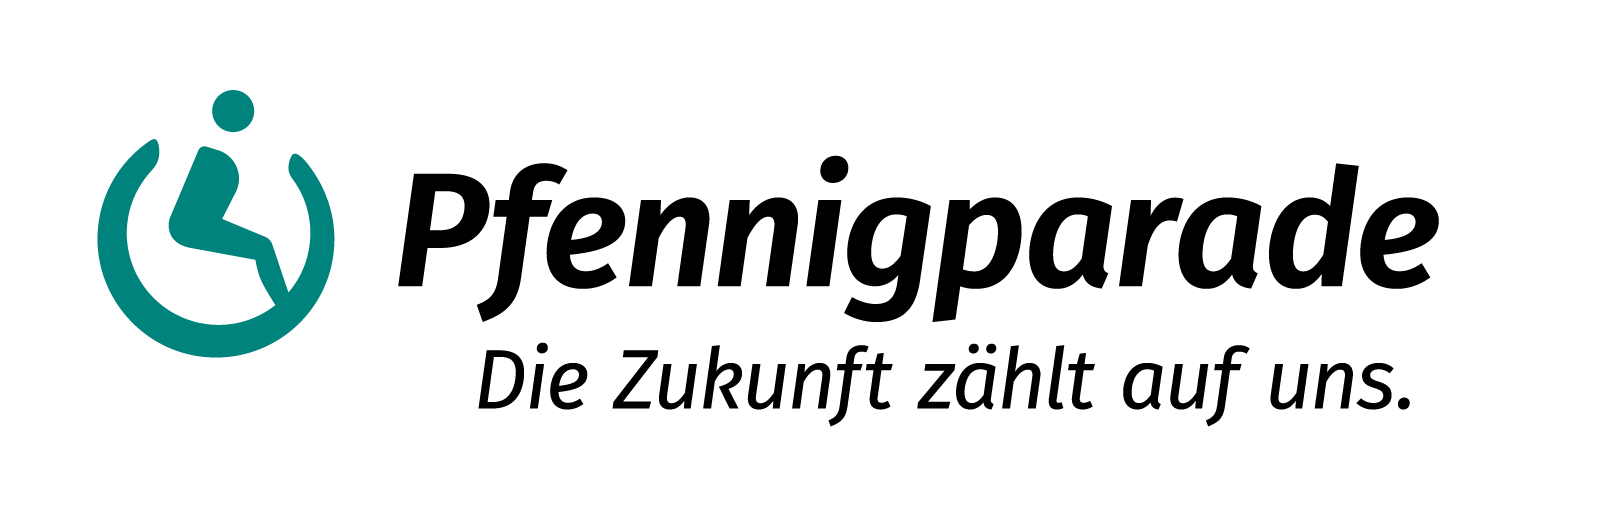 Pfennigparade_Logo